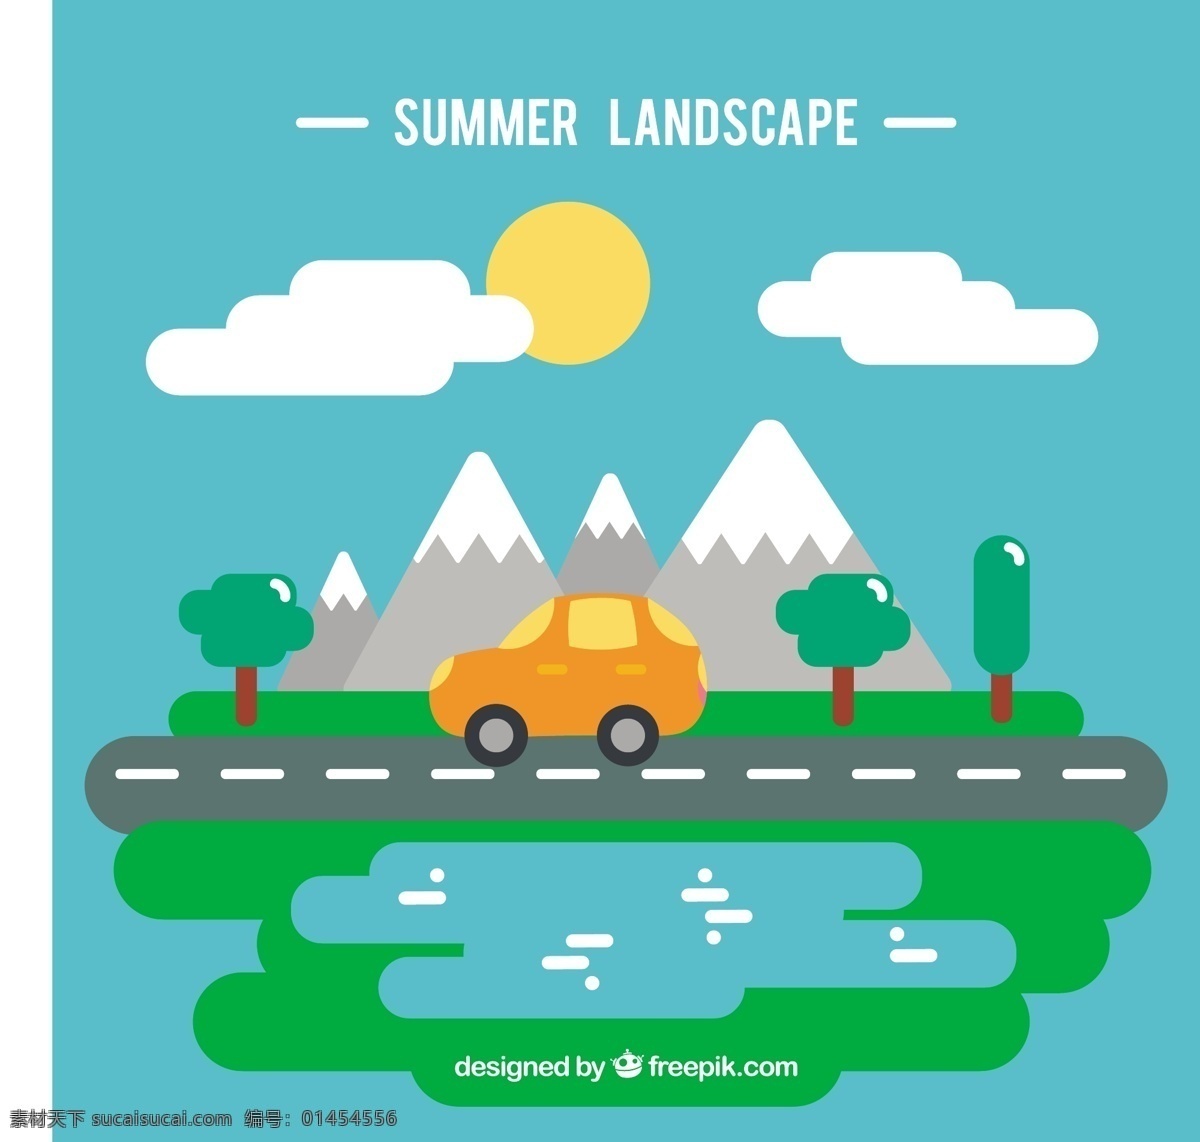 平面设计 背景 下 夏季 旅游景观 汽车 旅游 阳光 自然 景观 平面 度假 山地 出行 自然背景 车辆 季节